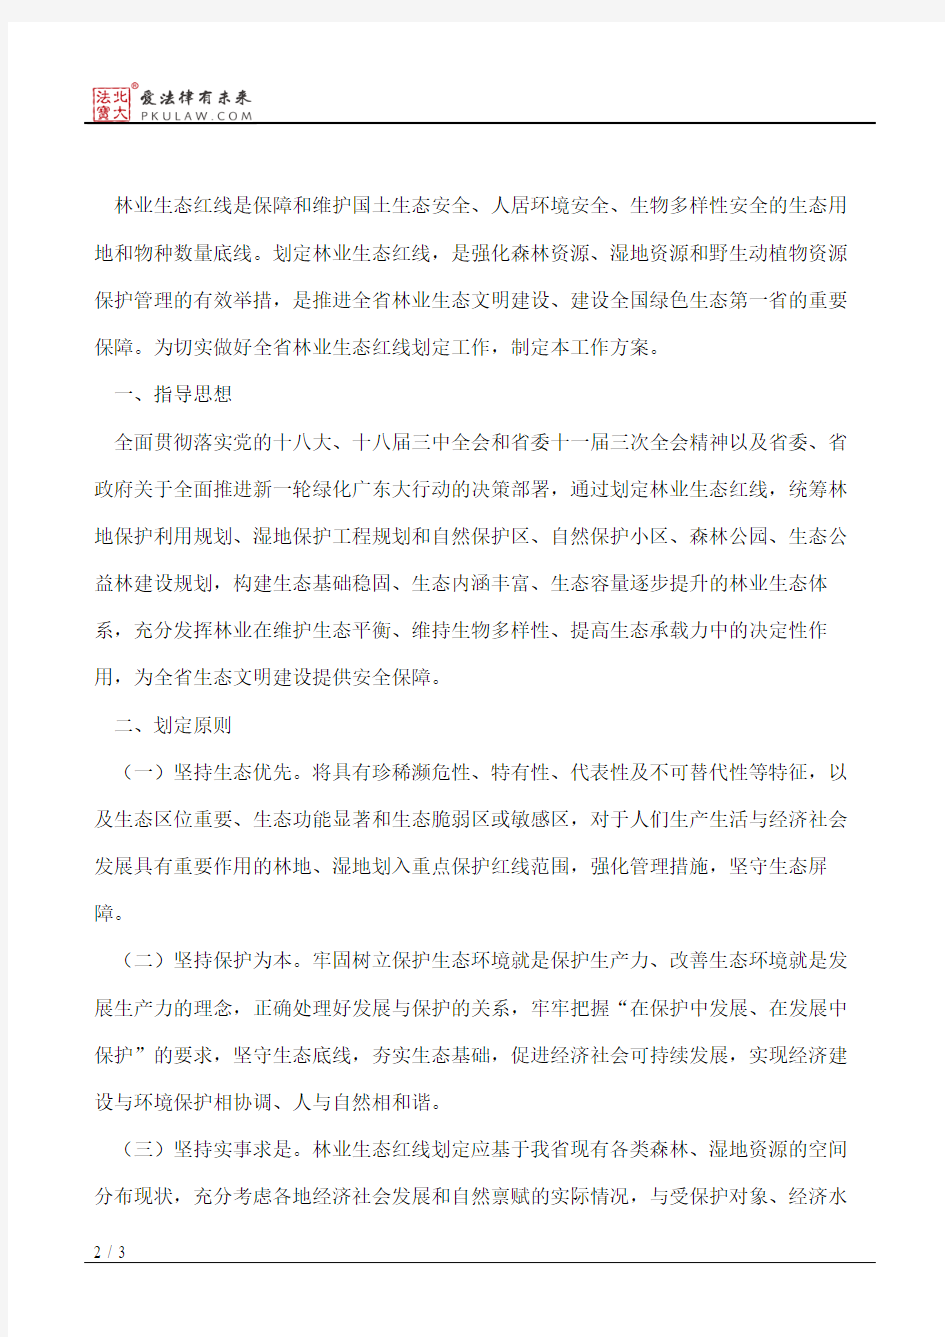 广东省人民政府办公厅关于印发广东省林业生态红线划定工作方案的通知